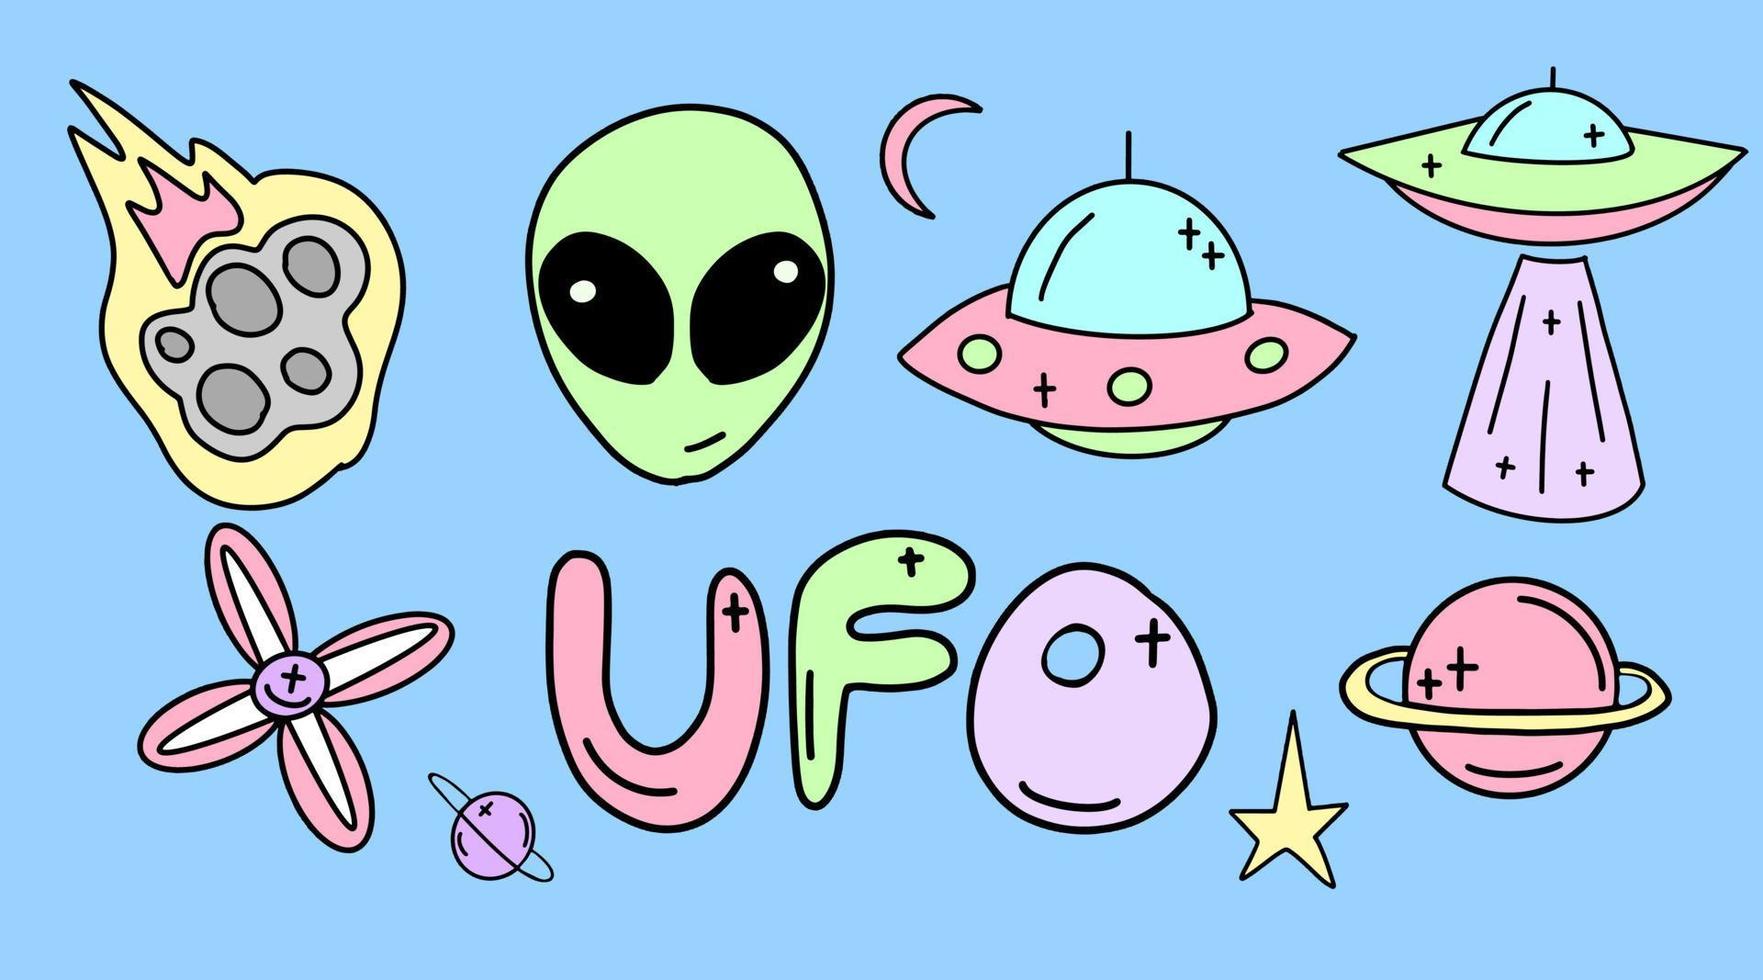 colección vectorial de ovnis, extraterrestres y objetos espaciales dibujados en estilo plano. ilustración espacial infantil. vector